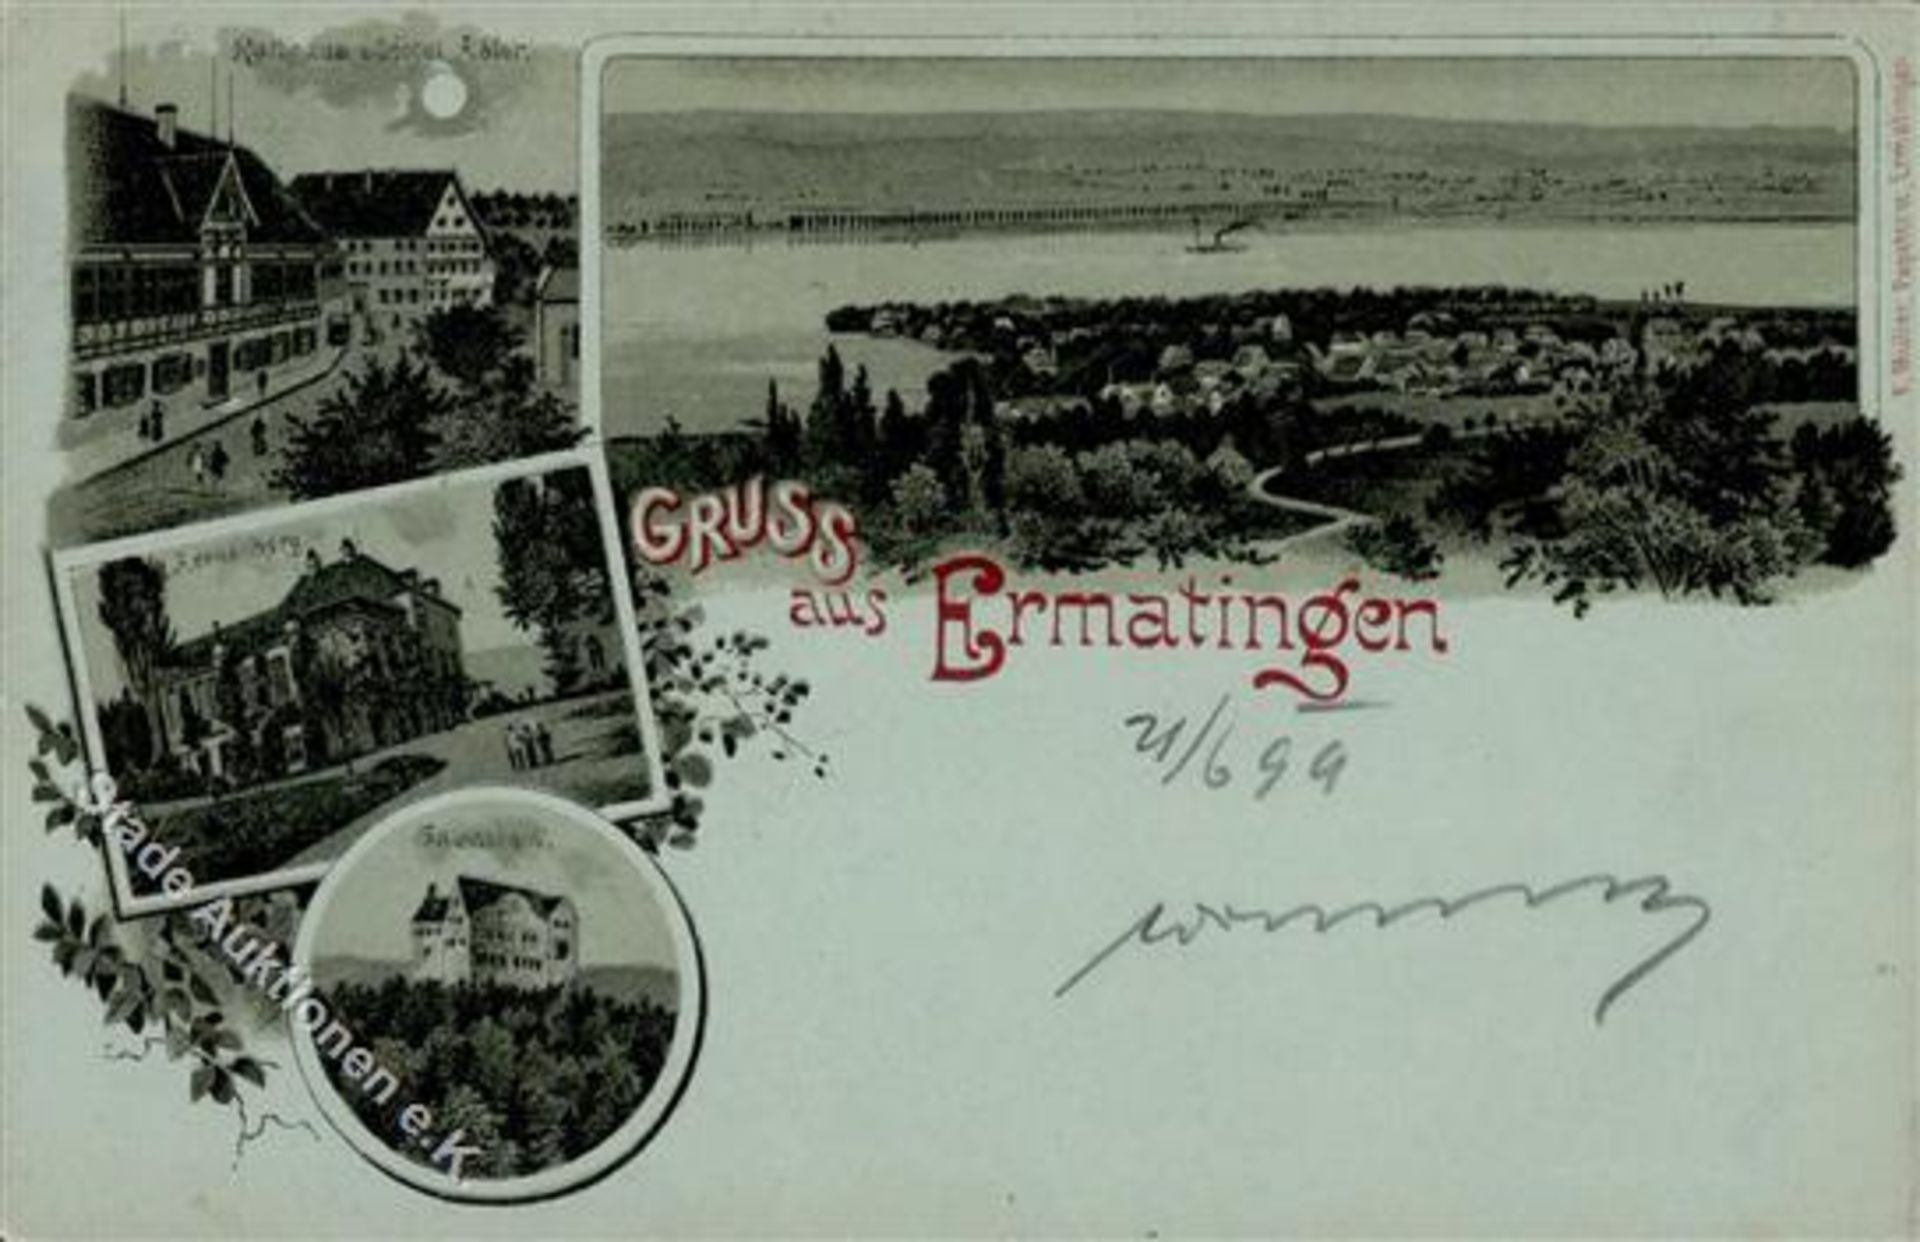 Ermatingen (8272) Schweiz Rathaus Hotel Adler Lithographie / Mondschein 1899 I-Dieses Los wird in